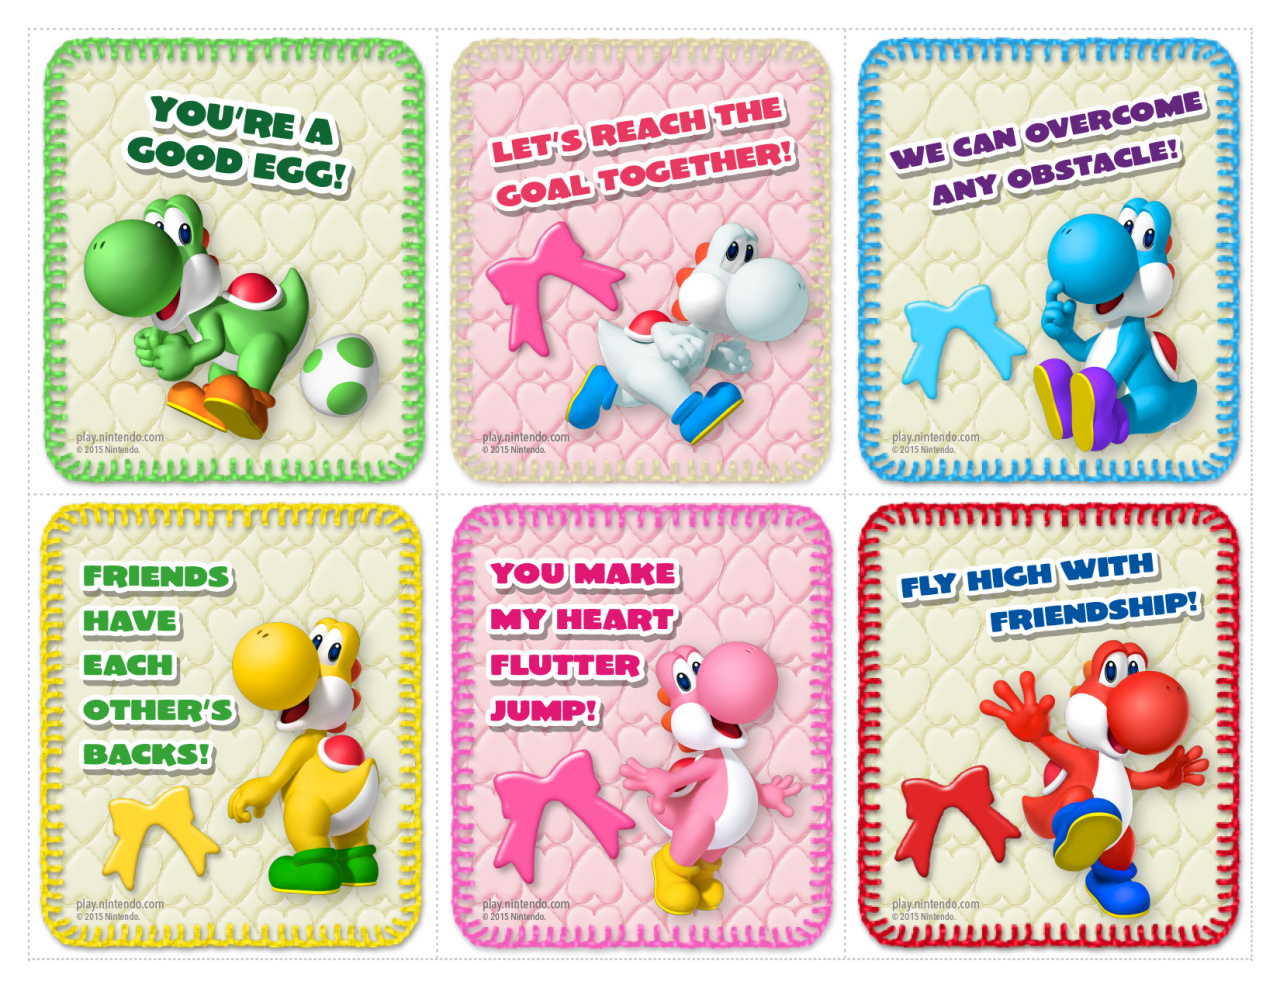 Nintendo Creates Mario Vs. Donkey Kong Valentine's Day Cards